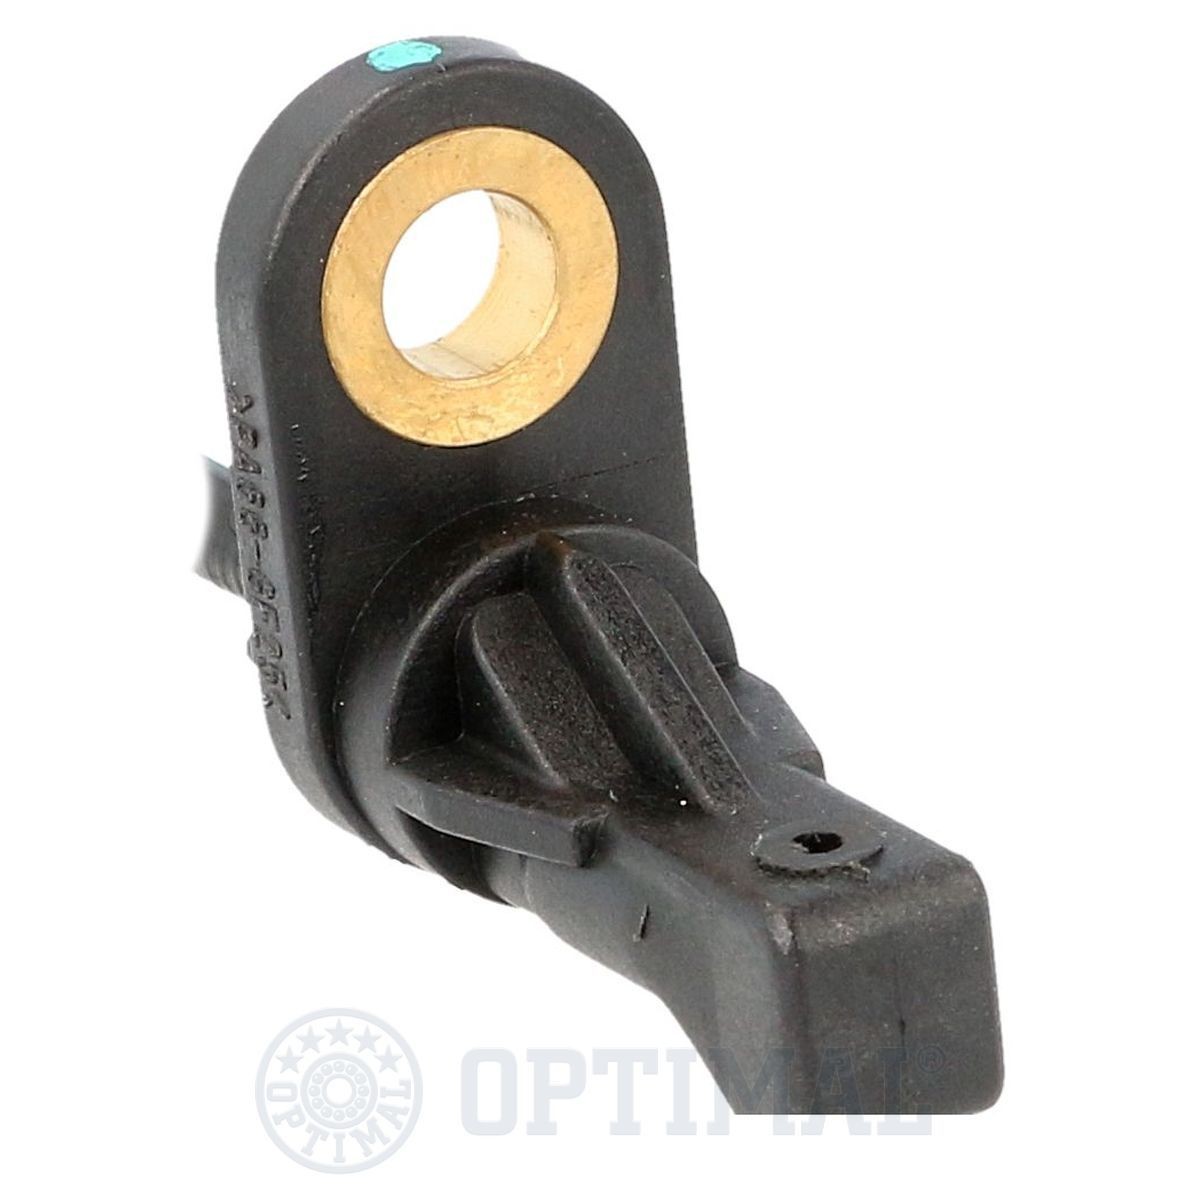 06S707 Anti lock brake sensor OPTIMAL 06-S707 review and test